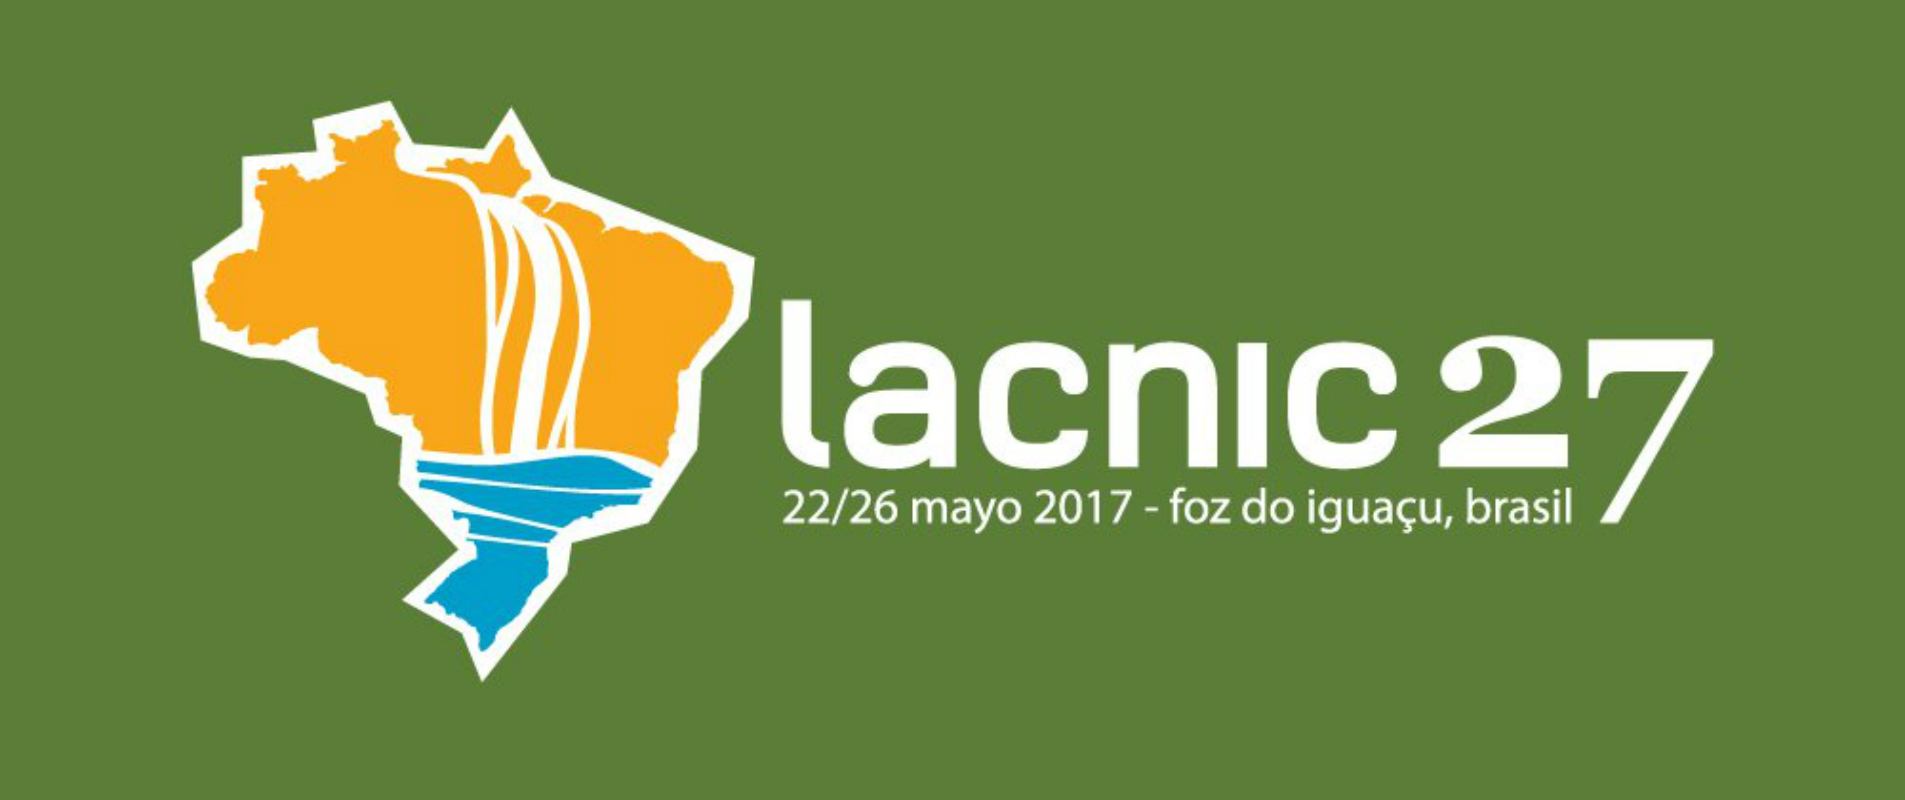 La reunión, que nucleará a la comunidad de Internet de América Latina y el Caribe, se llevará a cabo del 22 al 26 de mayo